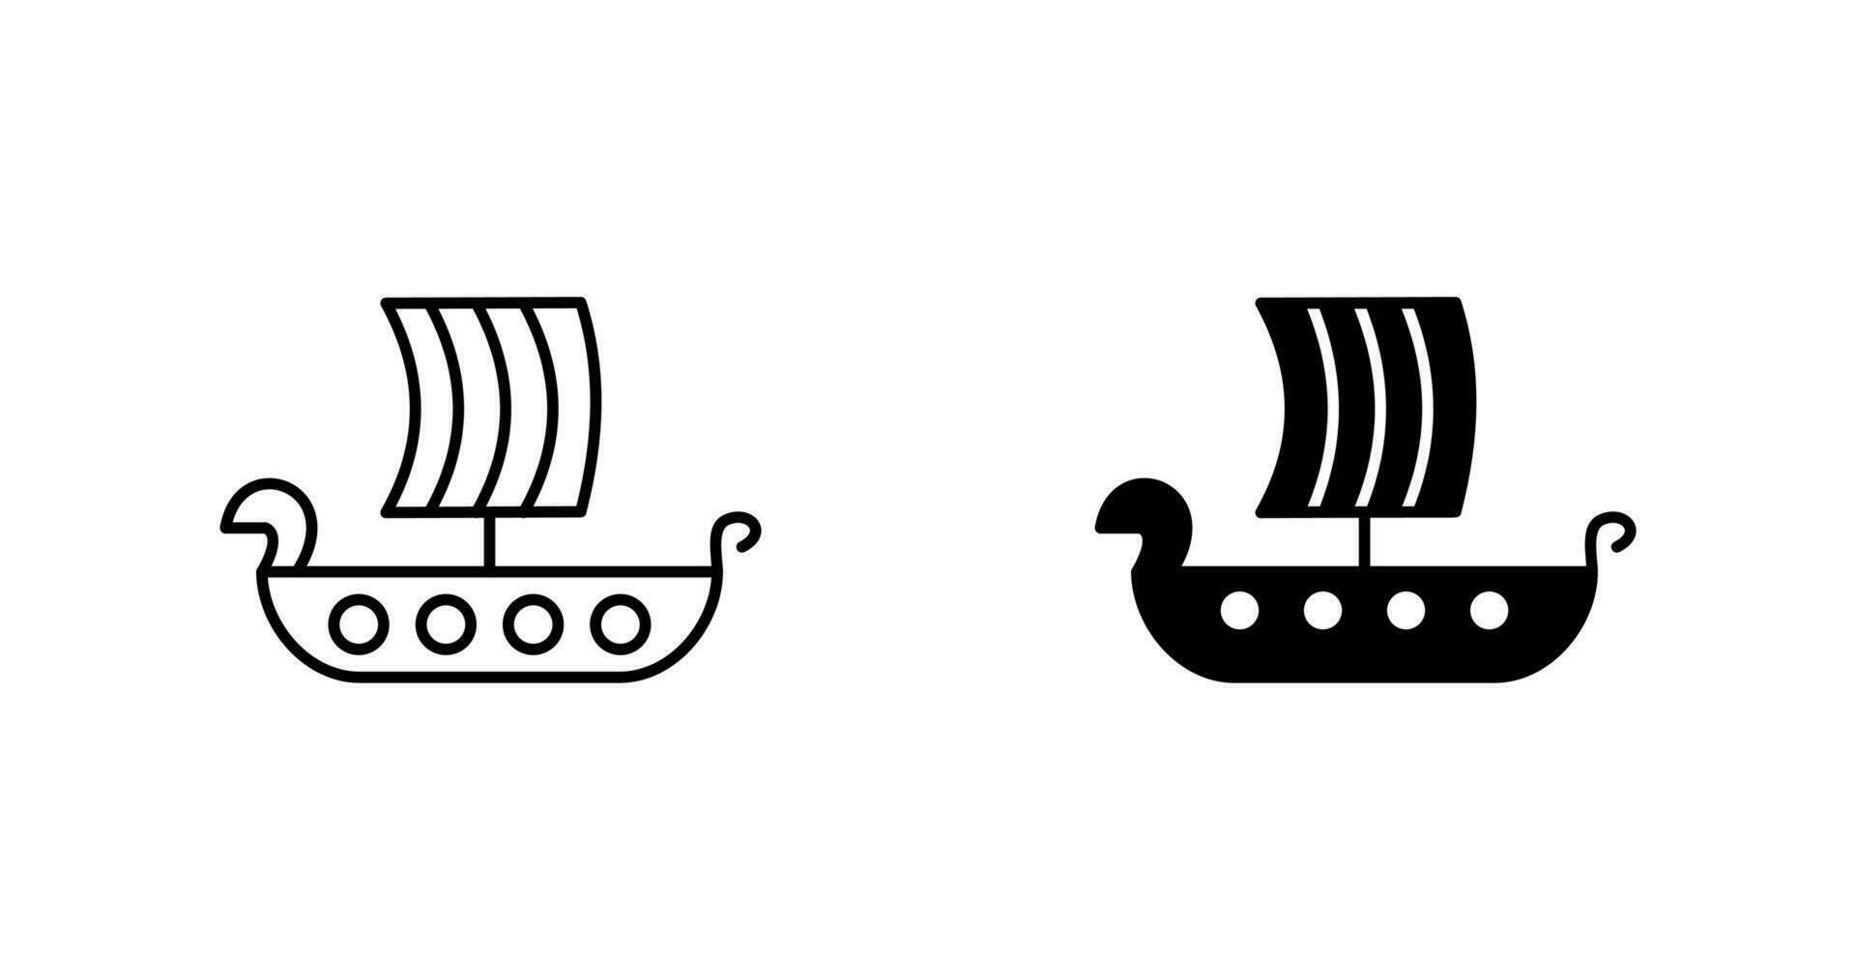 viking schip vector icoon